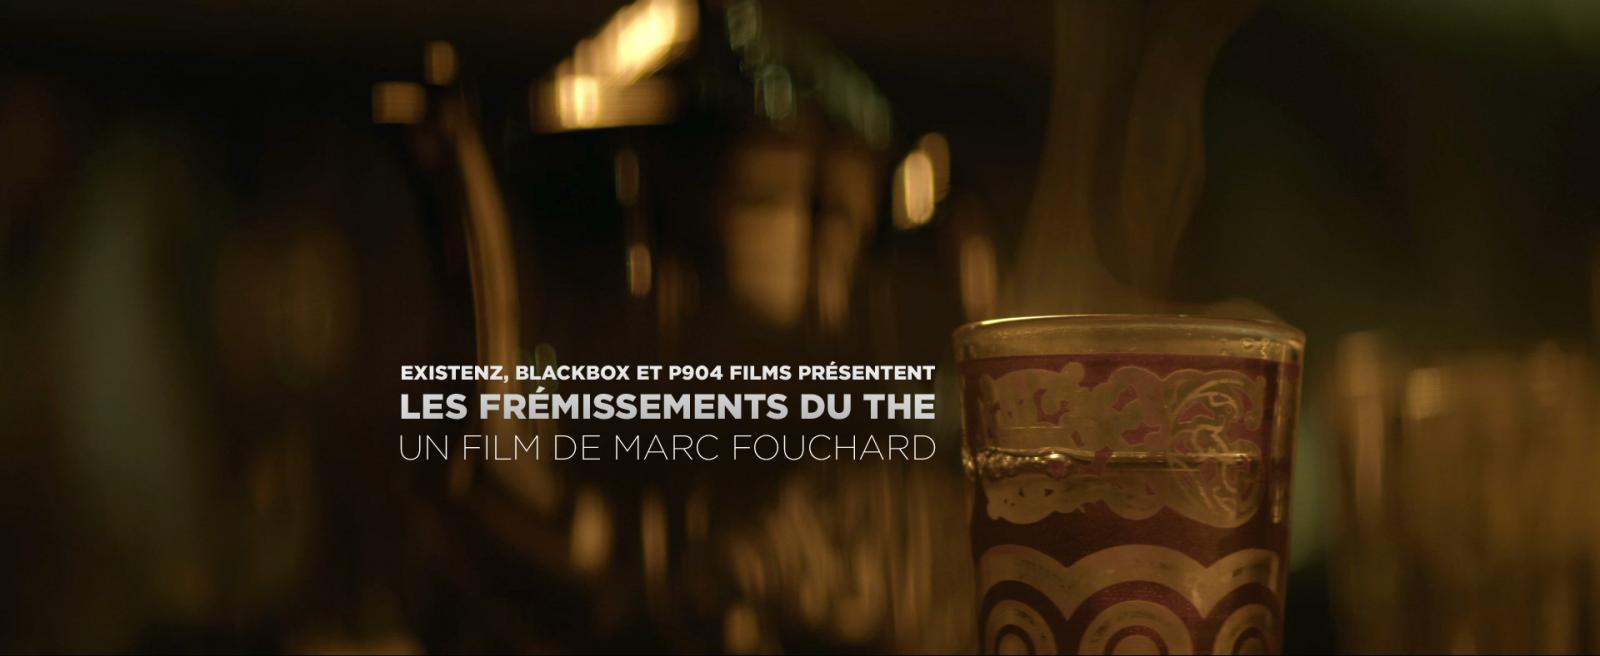 Court métrage Les frémissements du thé de Marc Fouchard (2014)